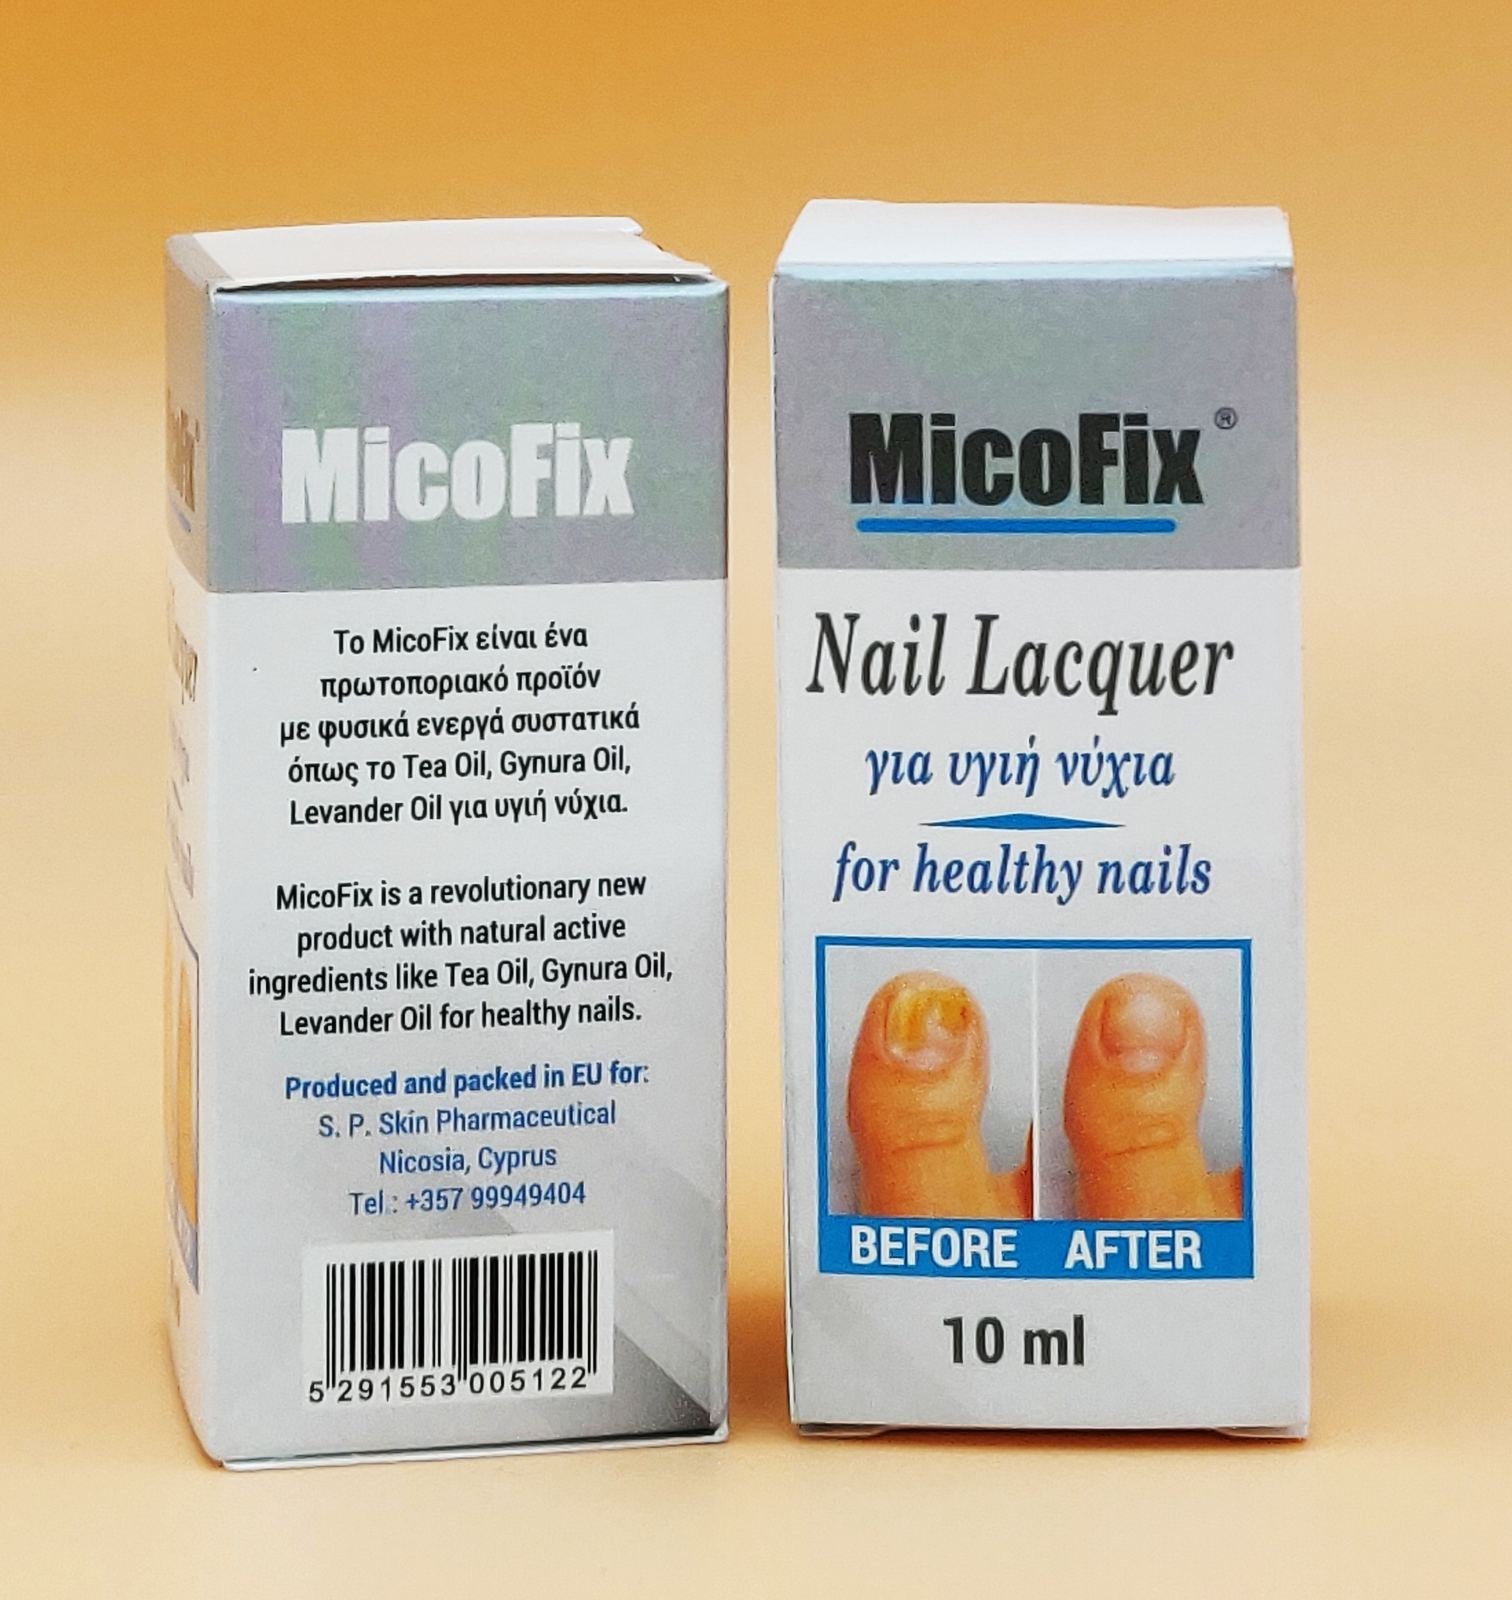 MicoFix για υγιή νύχια